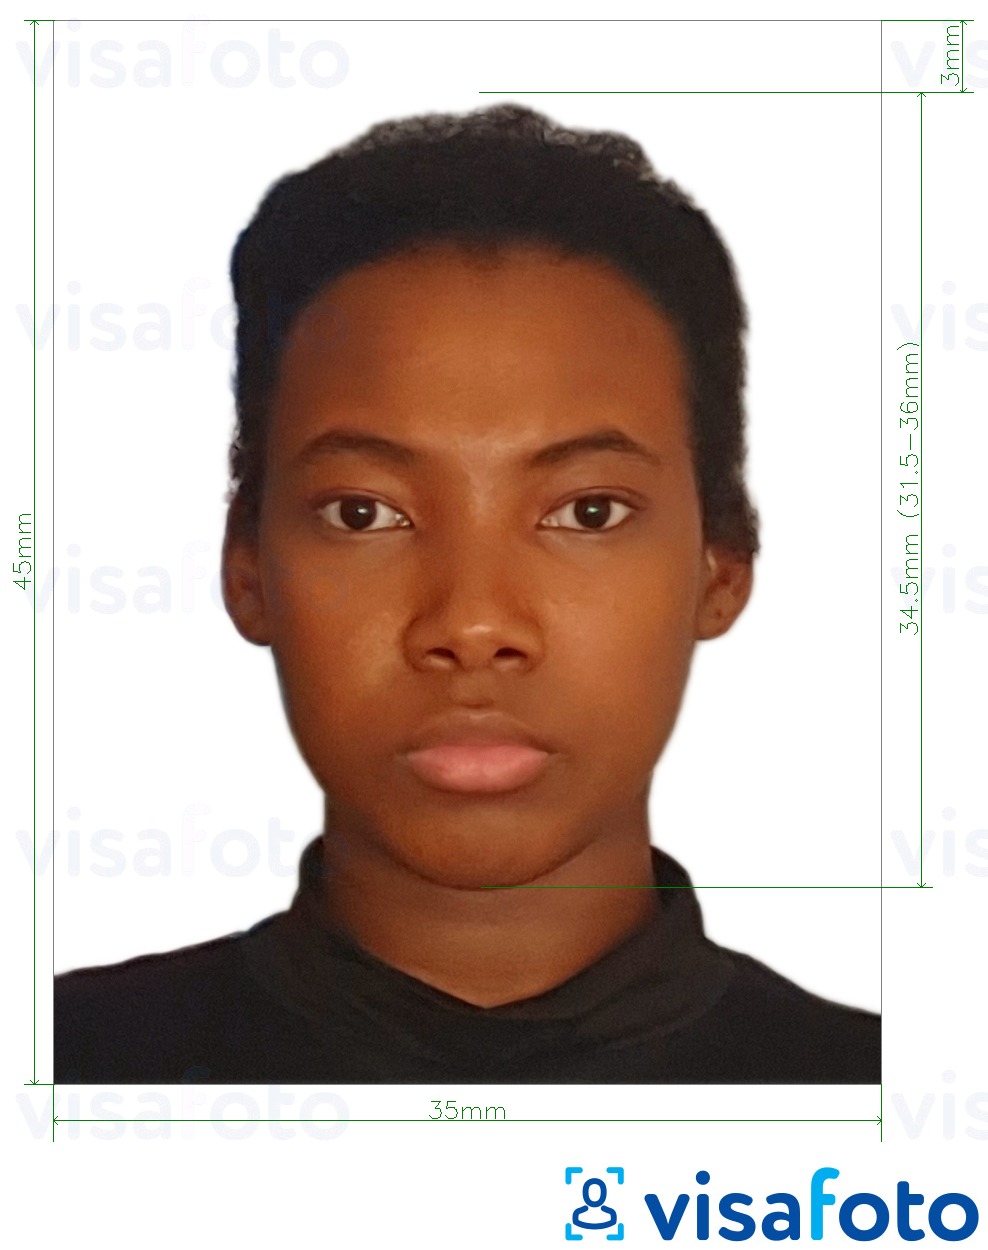 Exemple de foto per a Guyana passaport 45x35 mm (1.77 x 1.38 polzades) amb la mida exacta especificada